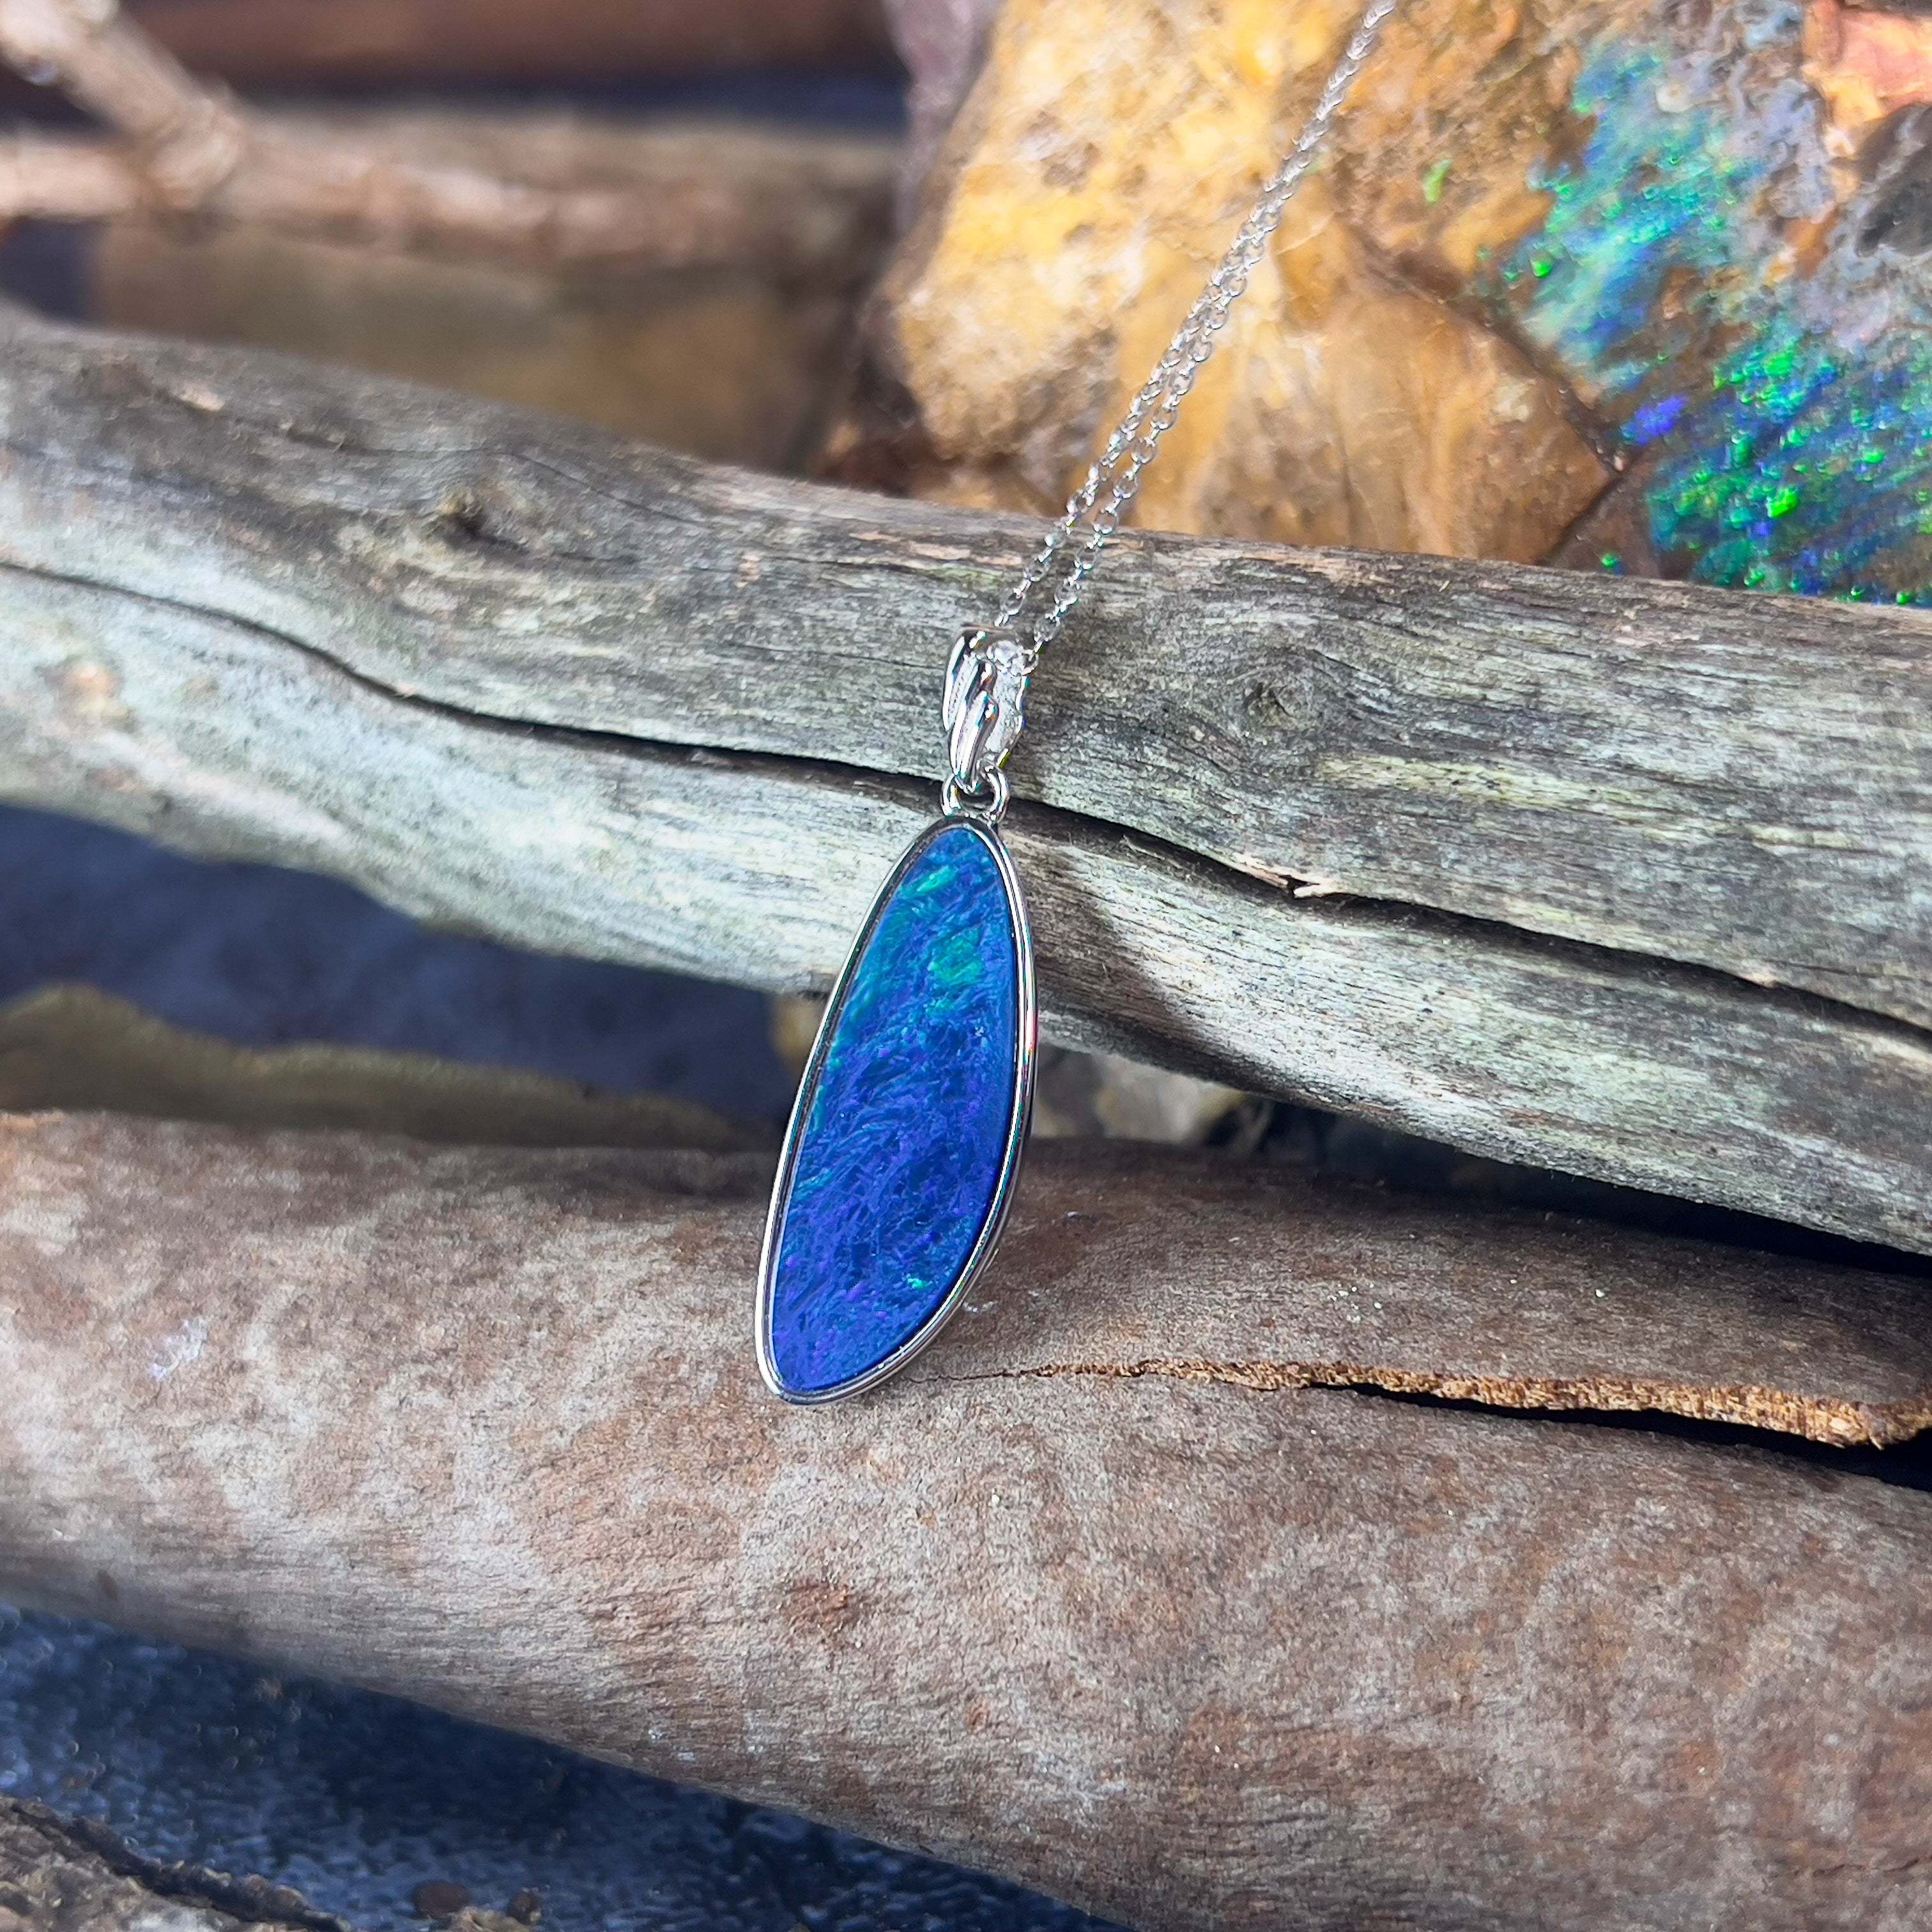 Sterling Silver Blue Green Opal doublet 25x9mm pendant - Masterpiece Jewellery Opal & Gems Sydney Australia | Online Shop